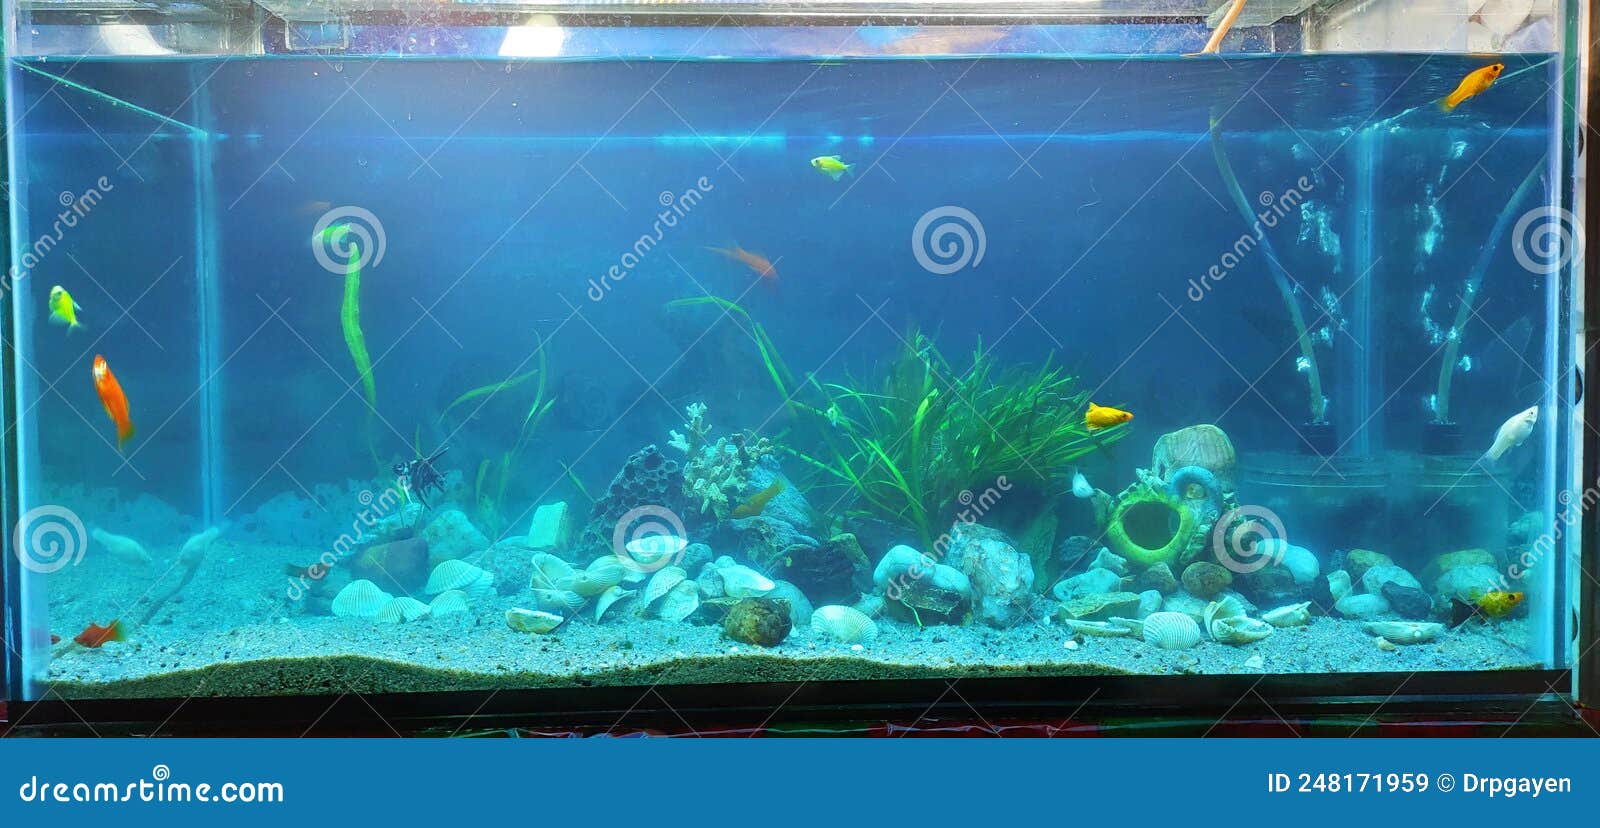 https://thumbs.dreamstime.com/z/acuario-dom%C3%A9stico-decorado-con-piedras-de-arena-corales-y-plantas-acu%C3%A1ticas-peces-naturales-rocas-grava-248171959.jpg